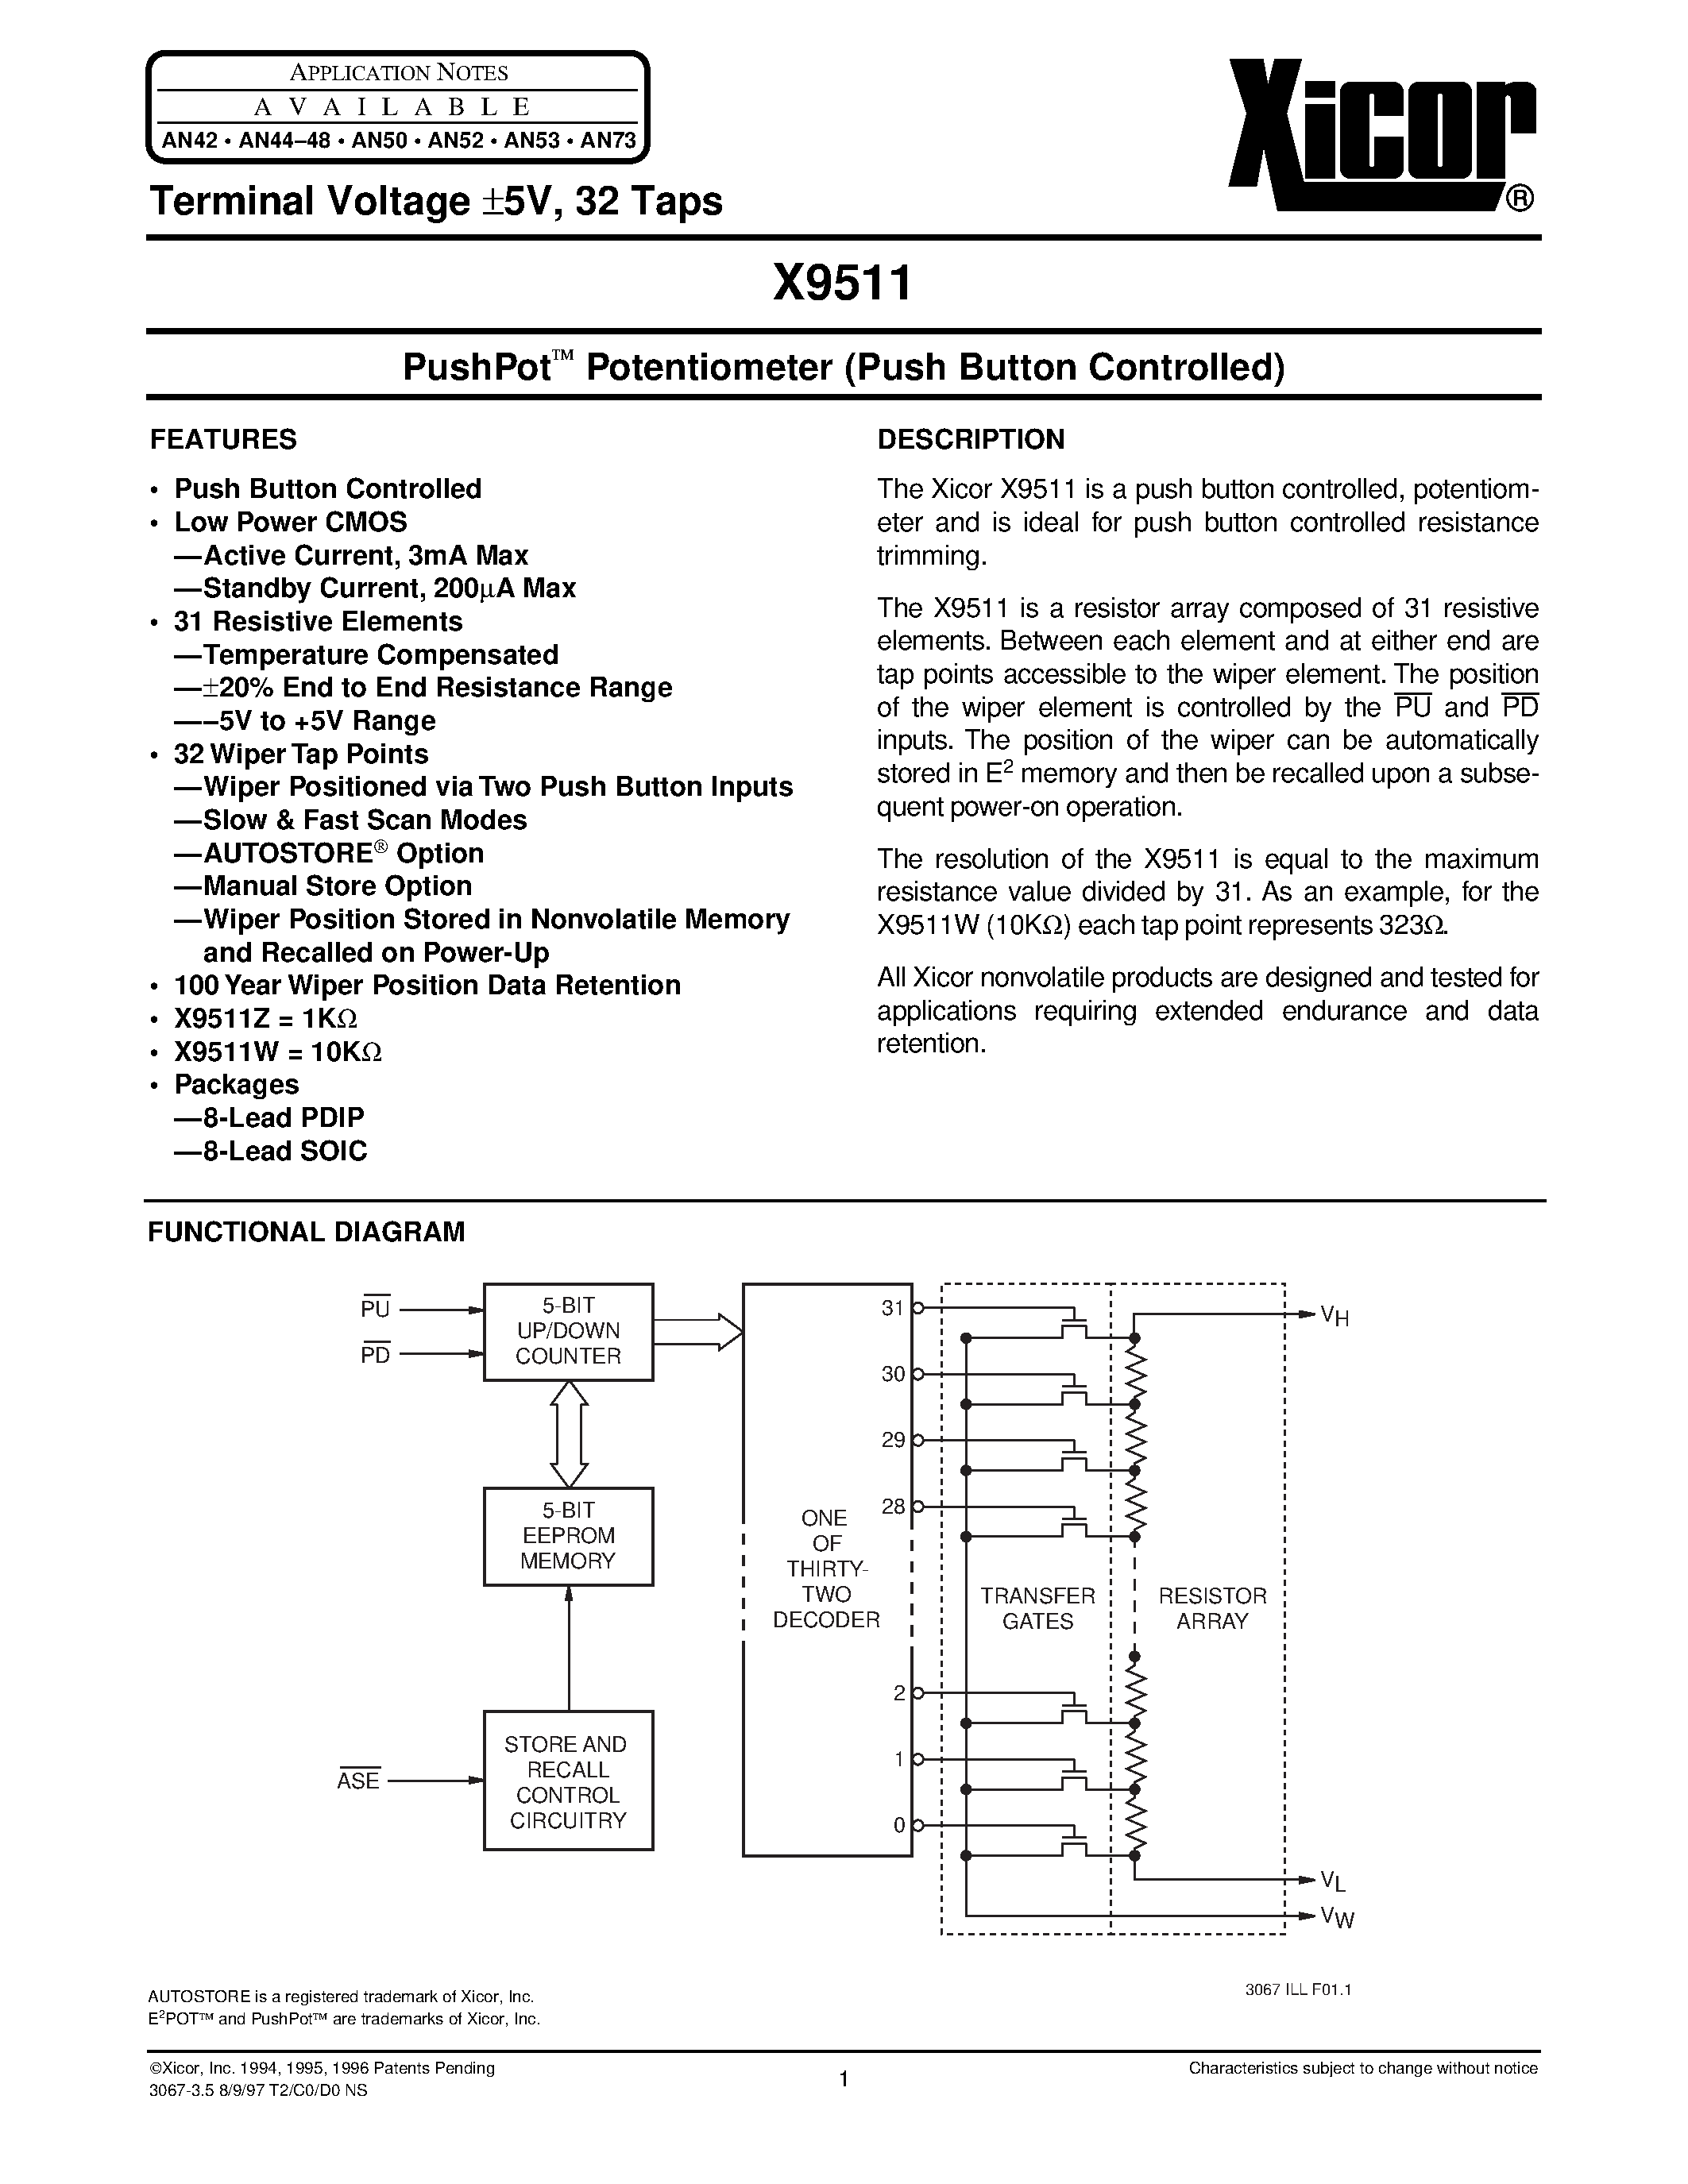 Даташит X9511ZSI - PushPot O Potentiometer (Push Button Controlled) страница 1